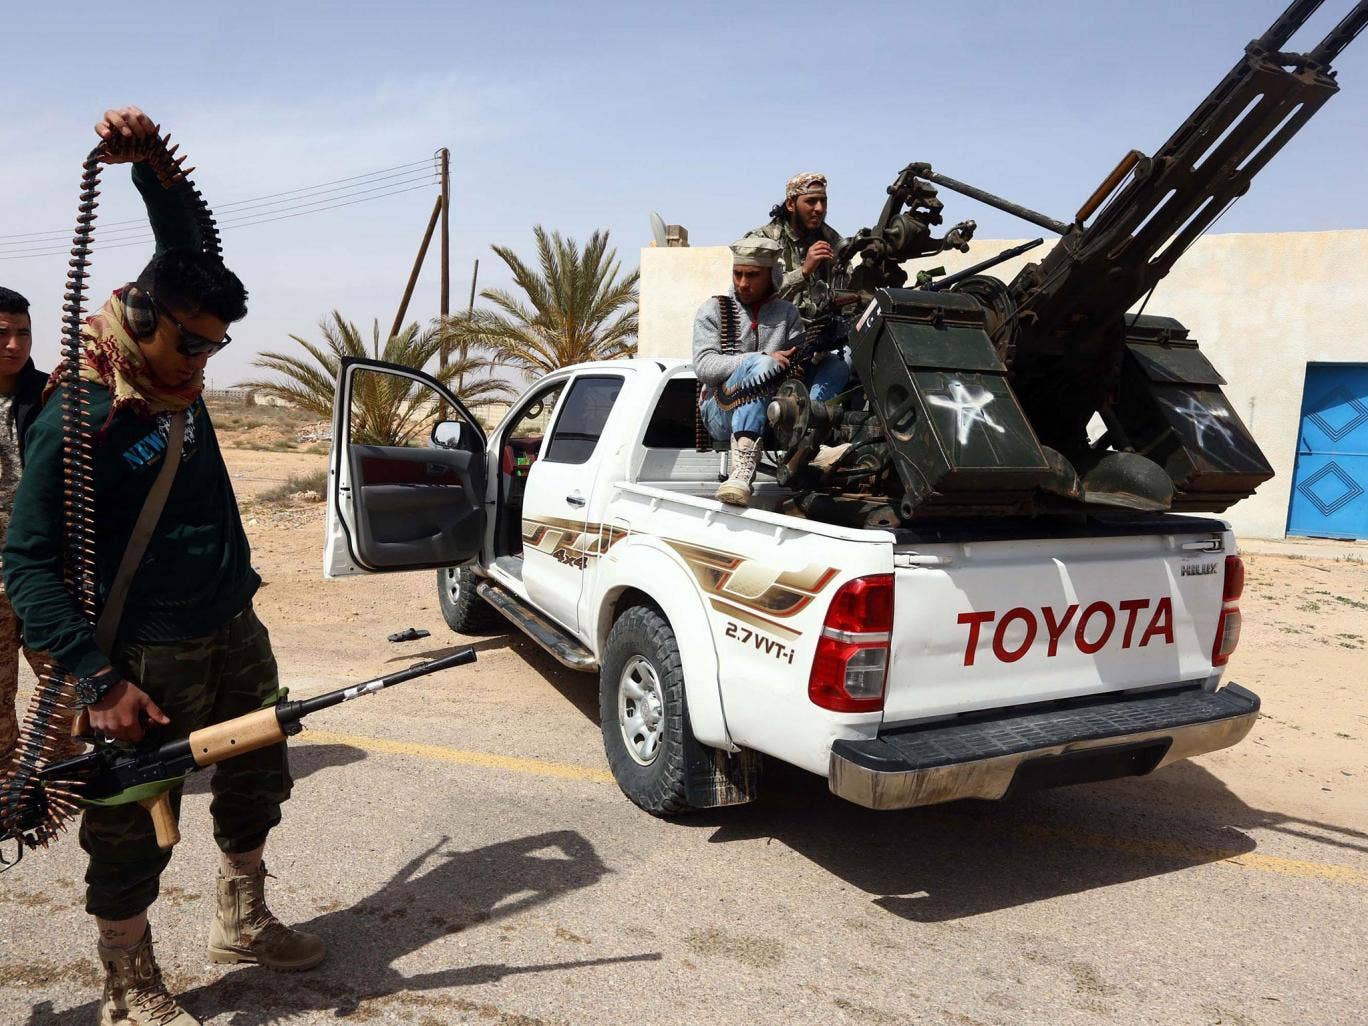 الاندبندنت البريطانية:بريطانيا في حرب في ليبياولا احد يخبرنا Web-libya-soldiers-get